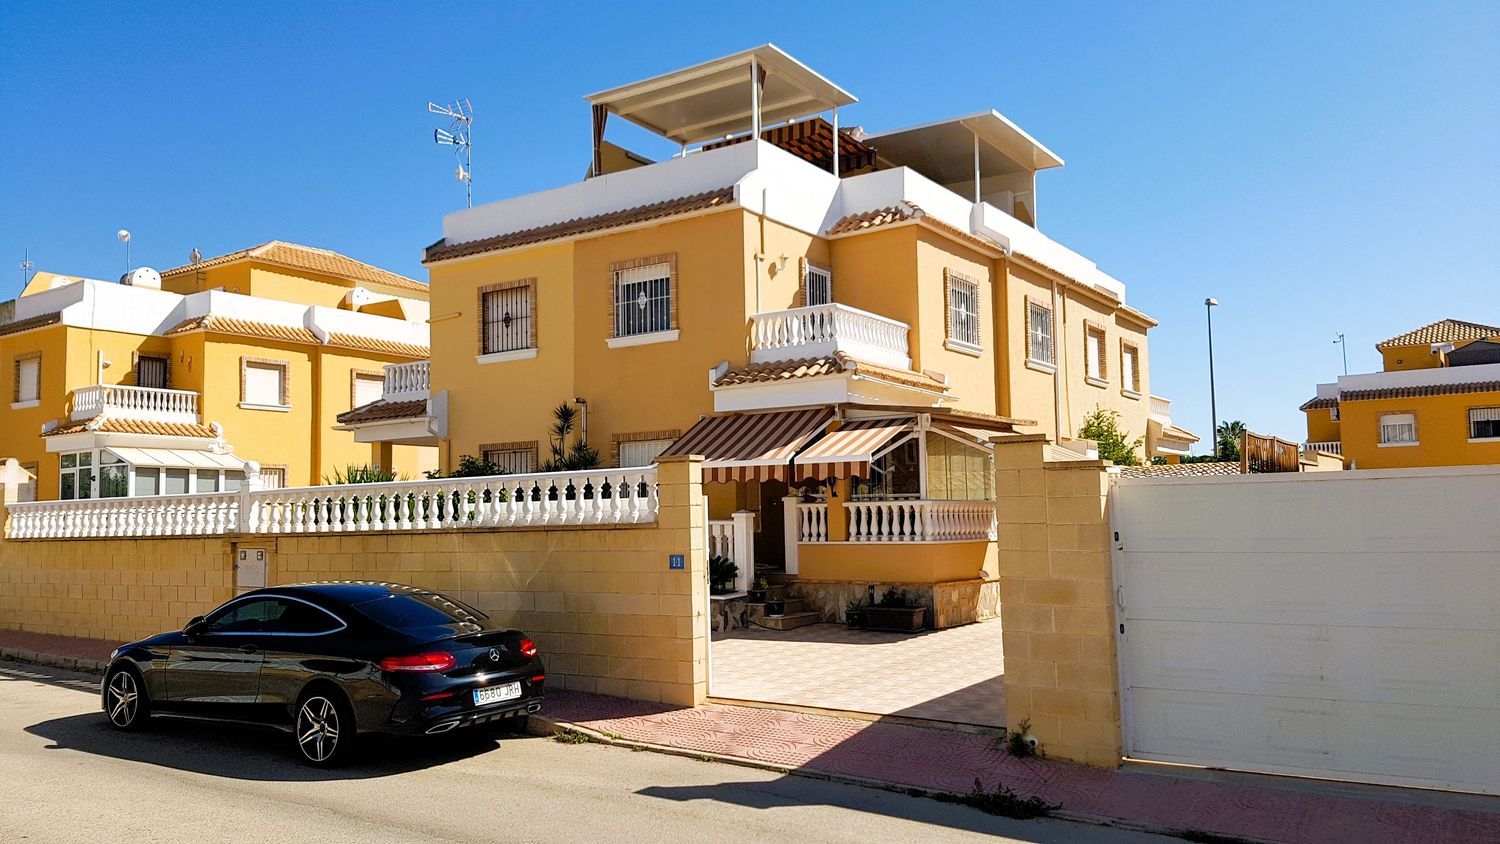 3405-03866. Semi-detached house in Ciudad Quesada (Alicante)